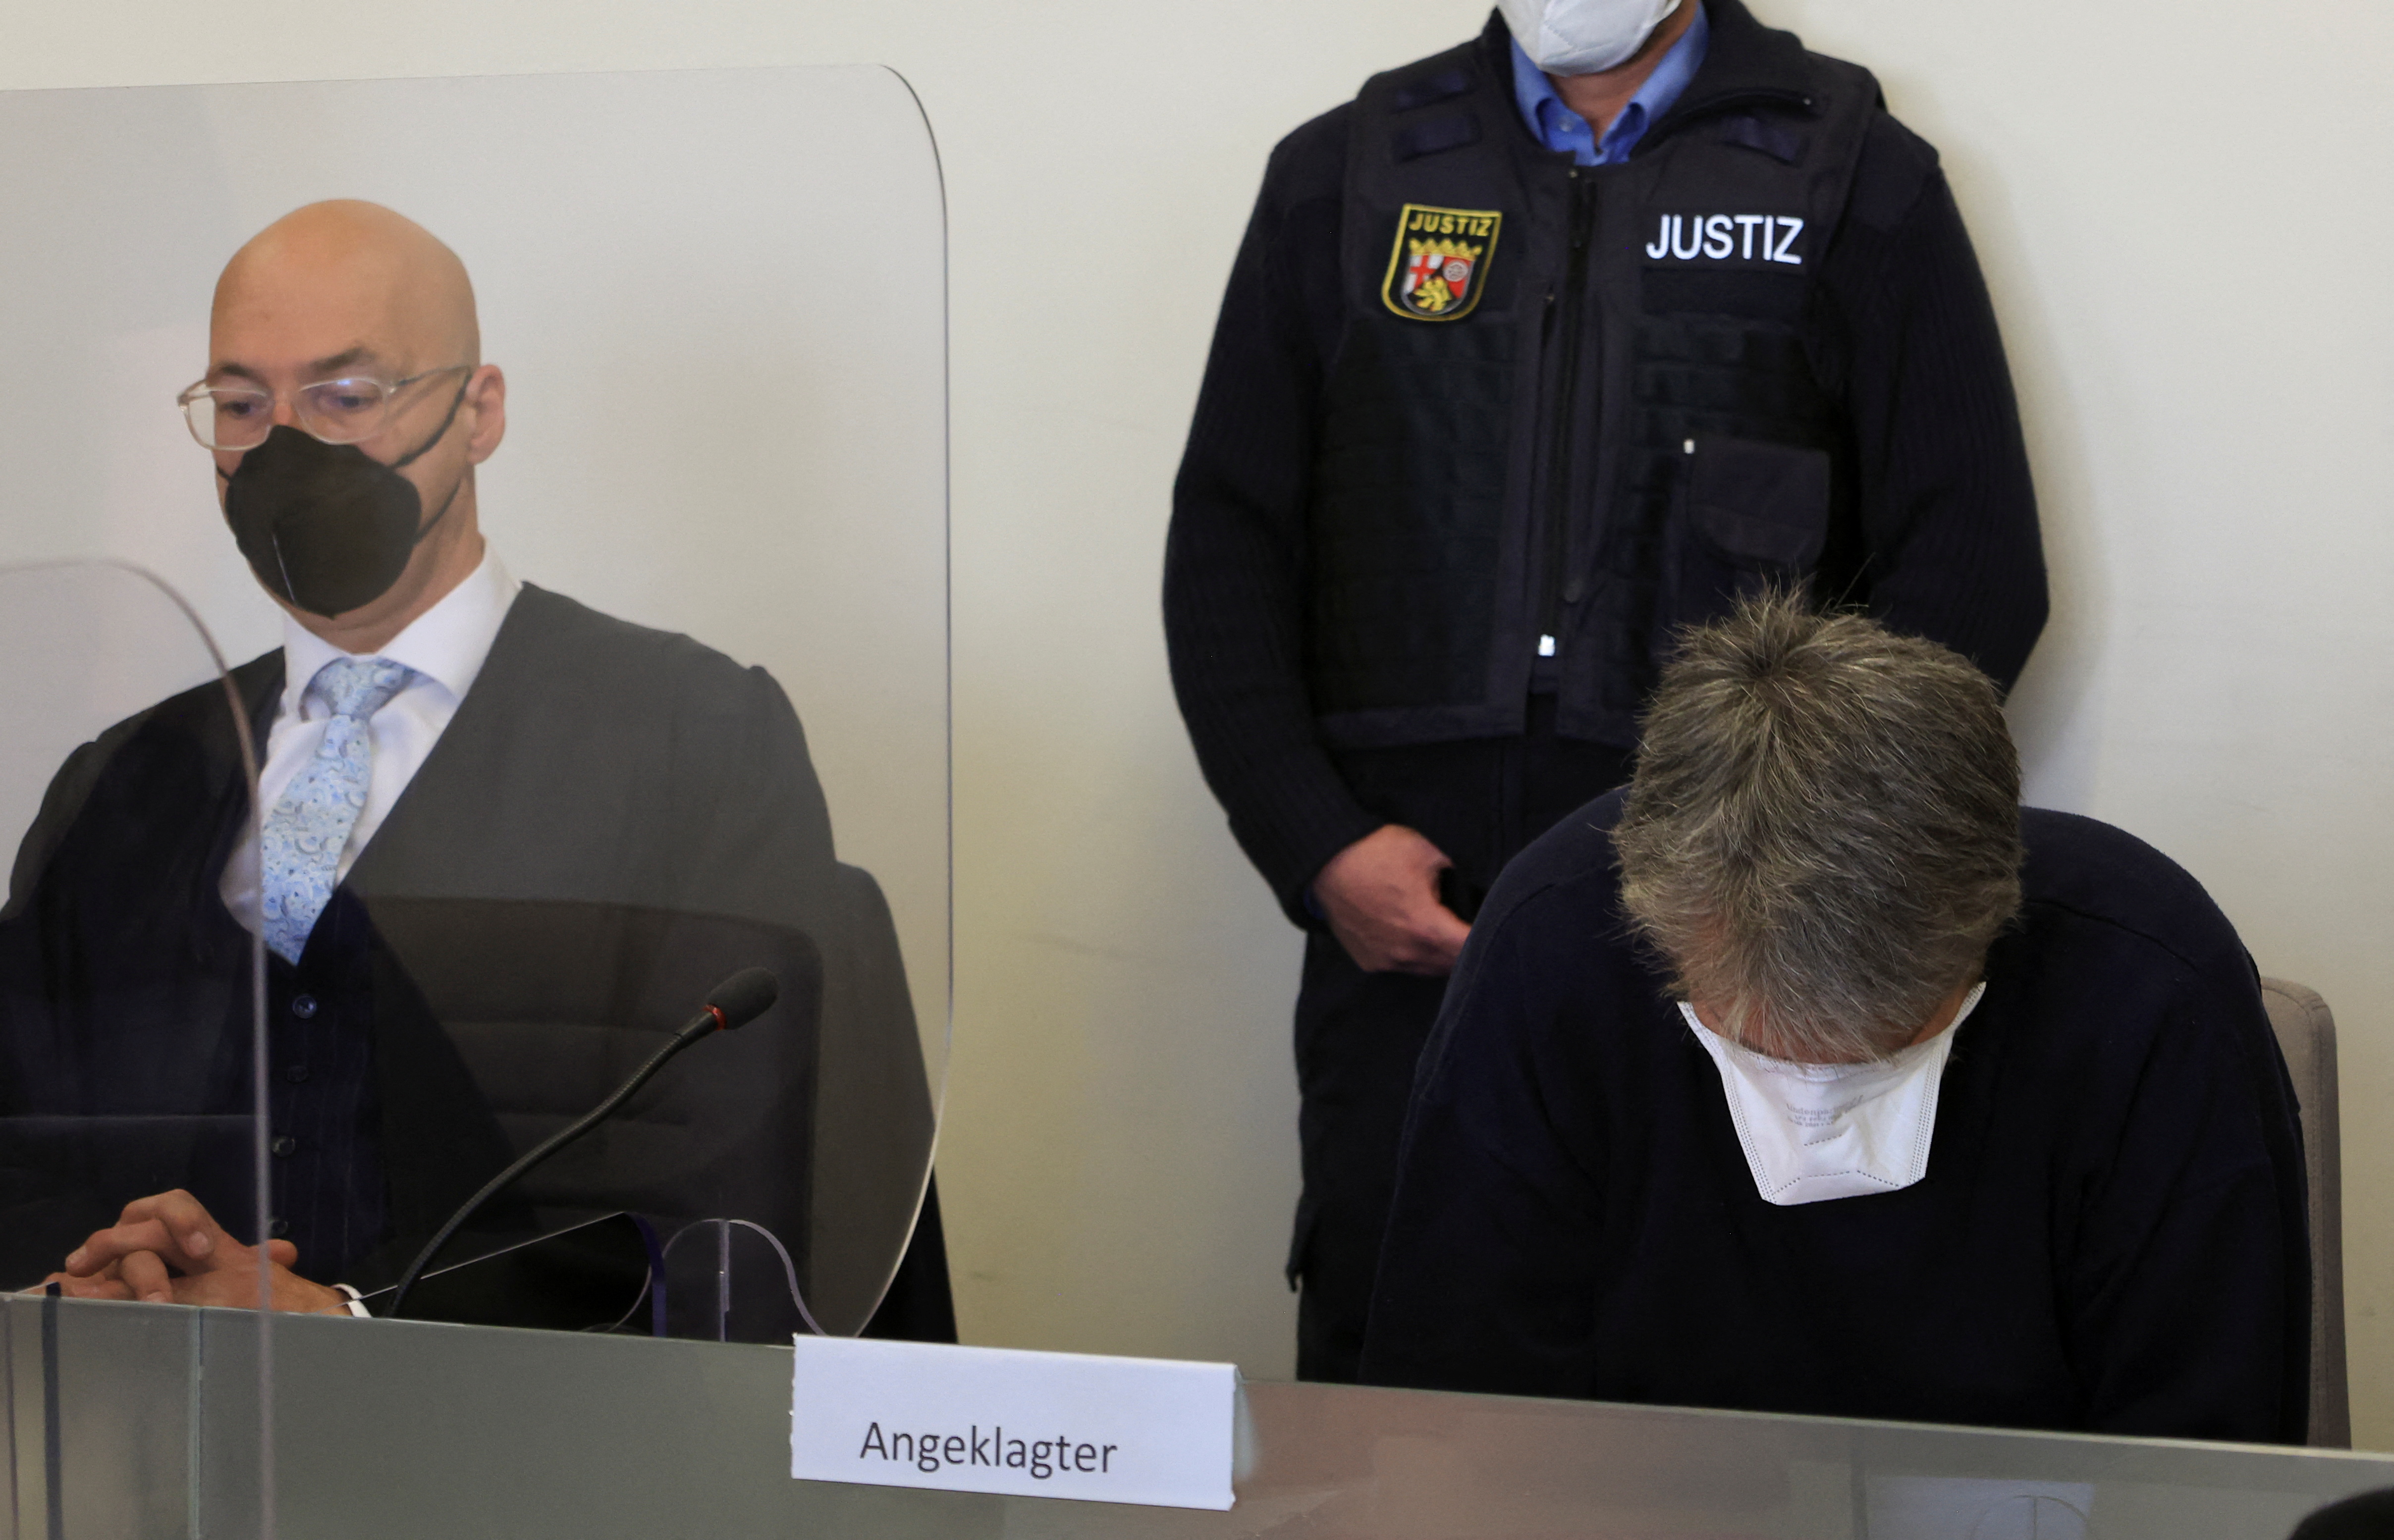 El hombre de 50 años acusado de haber matado a un empleado de gasolinera de 20 años, el 18 de septiembre de 2021, en Idar-Oberstein, se sienta con una máscara facial en un tribunal local junto con su abogado Alexander Klein en Bad Kreuznach, Alemania, el 21 de marzo de 2022. REUTERS/Wolfgang Rattay/Archivo